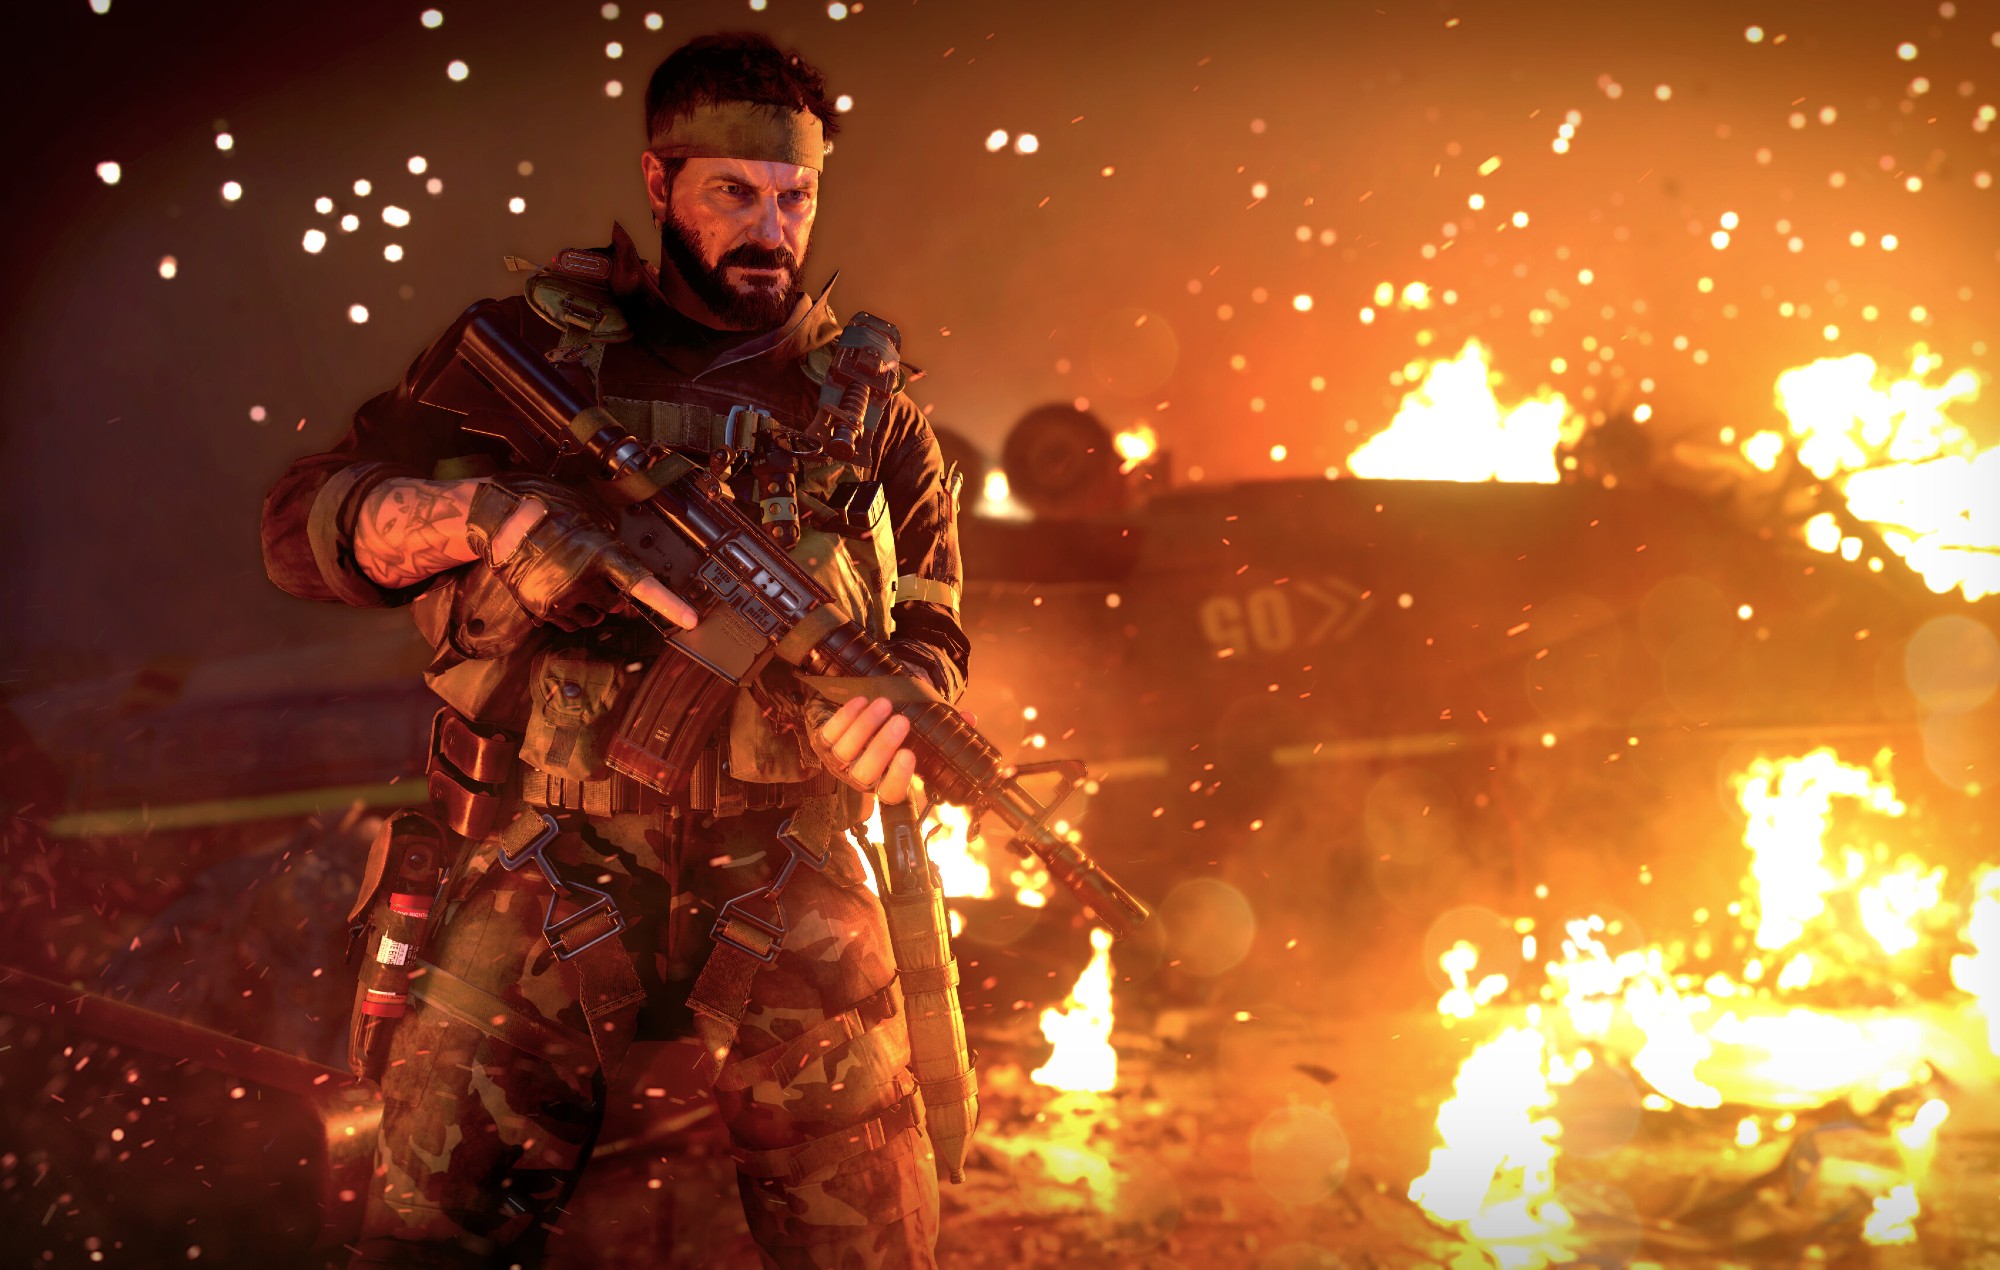 27.000 cuentas de "Call of Duty" bloqueadas y más por venir